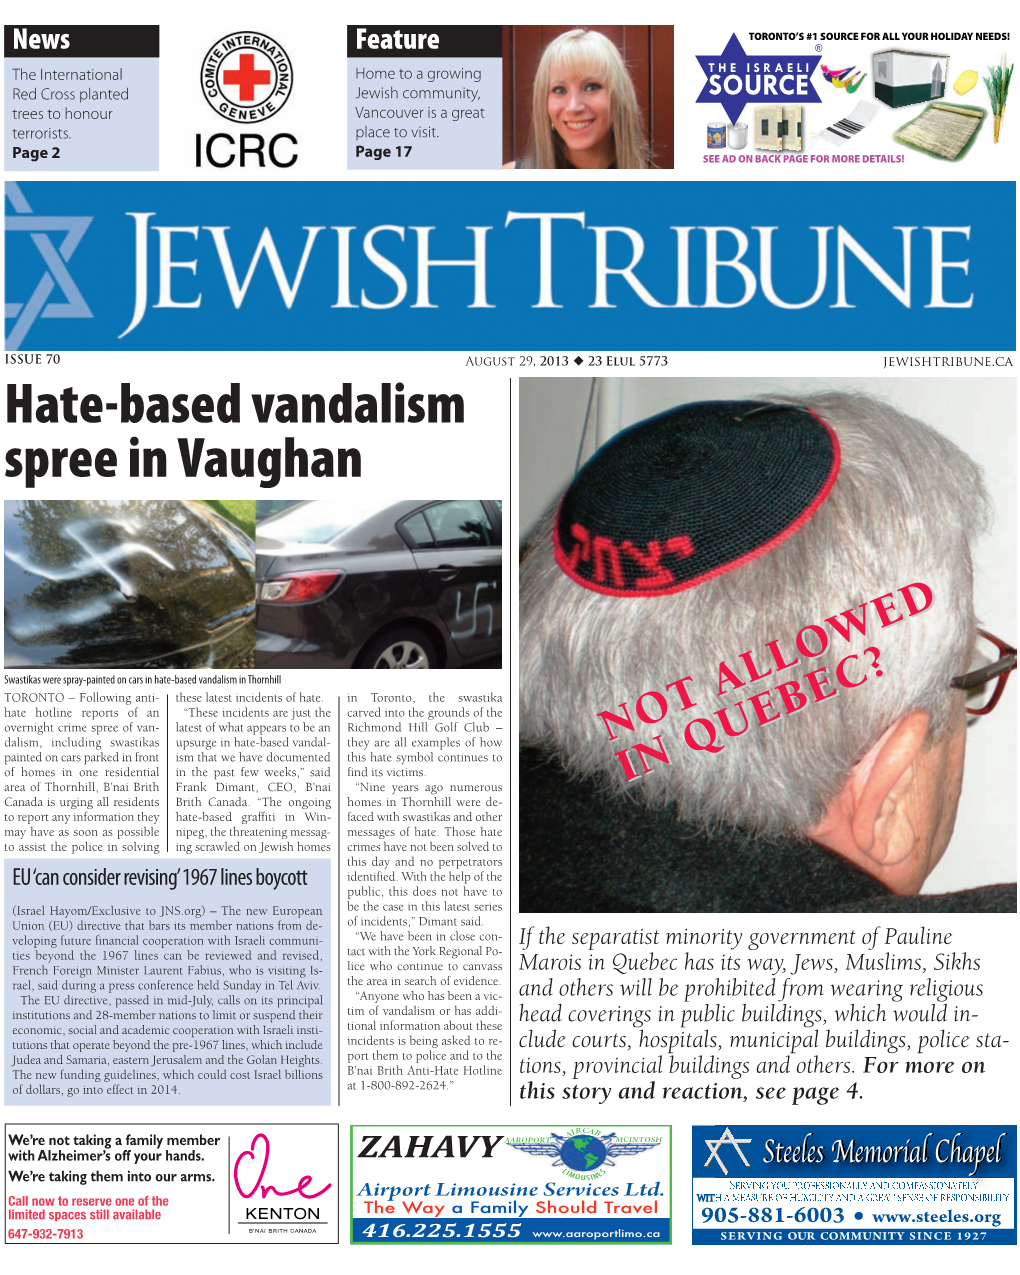 Hate-Based Vandalism Spree in Vaughan